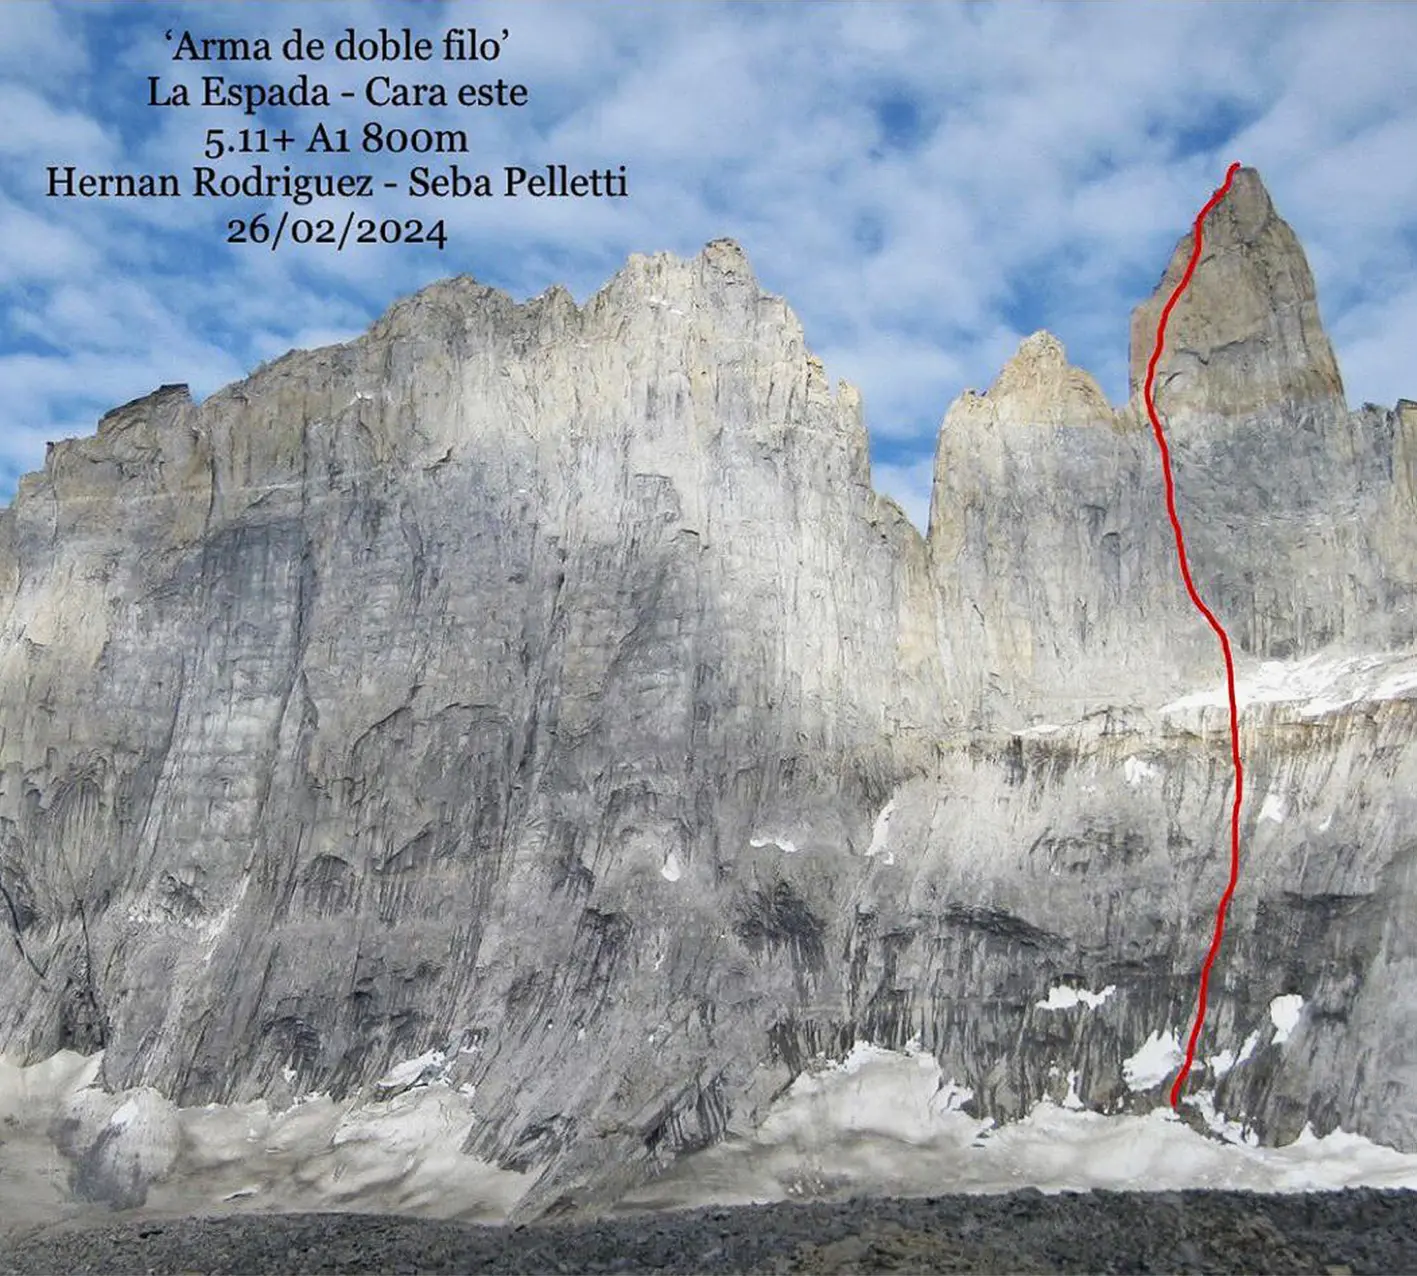 Маршрут "Arma de doble filo" 800м, A1 / 5.11+ на вершину Серро Еспада (Cerro Espada) заввишки 2196 метрів. Фото Seba Pelletti, Hernan Rodriguez